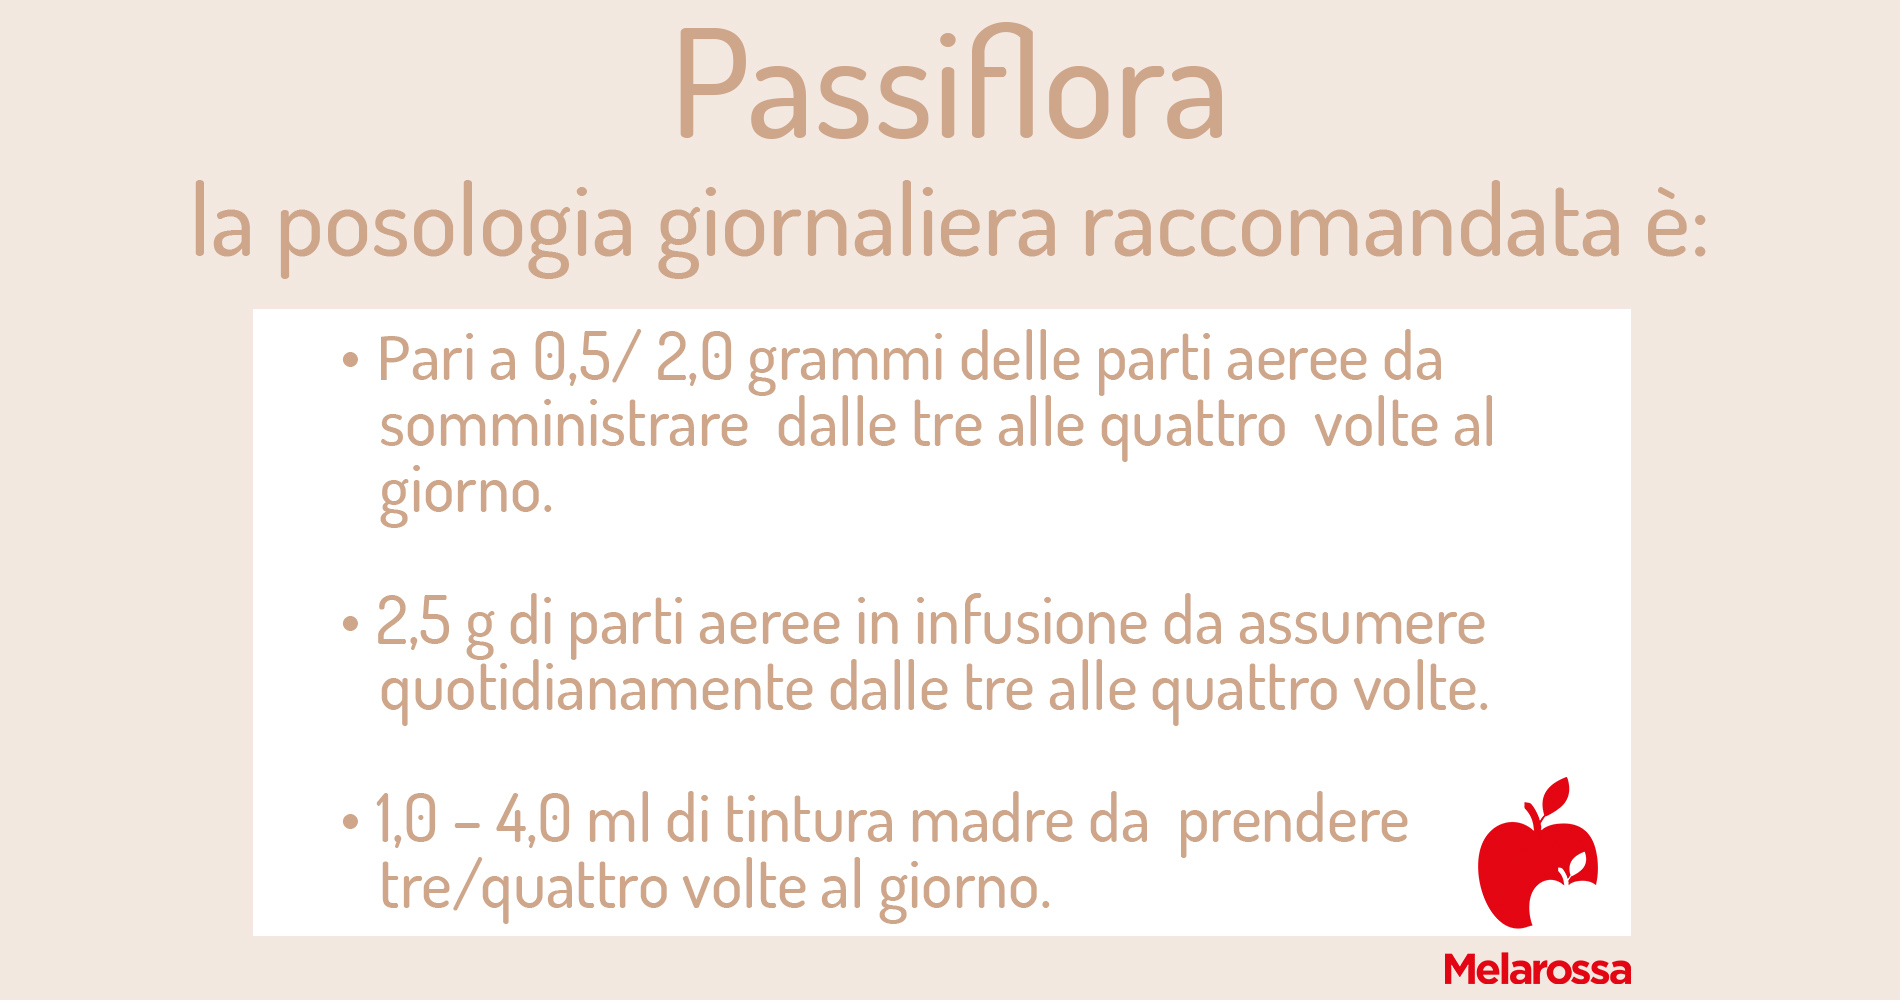 passiflora: posologia